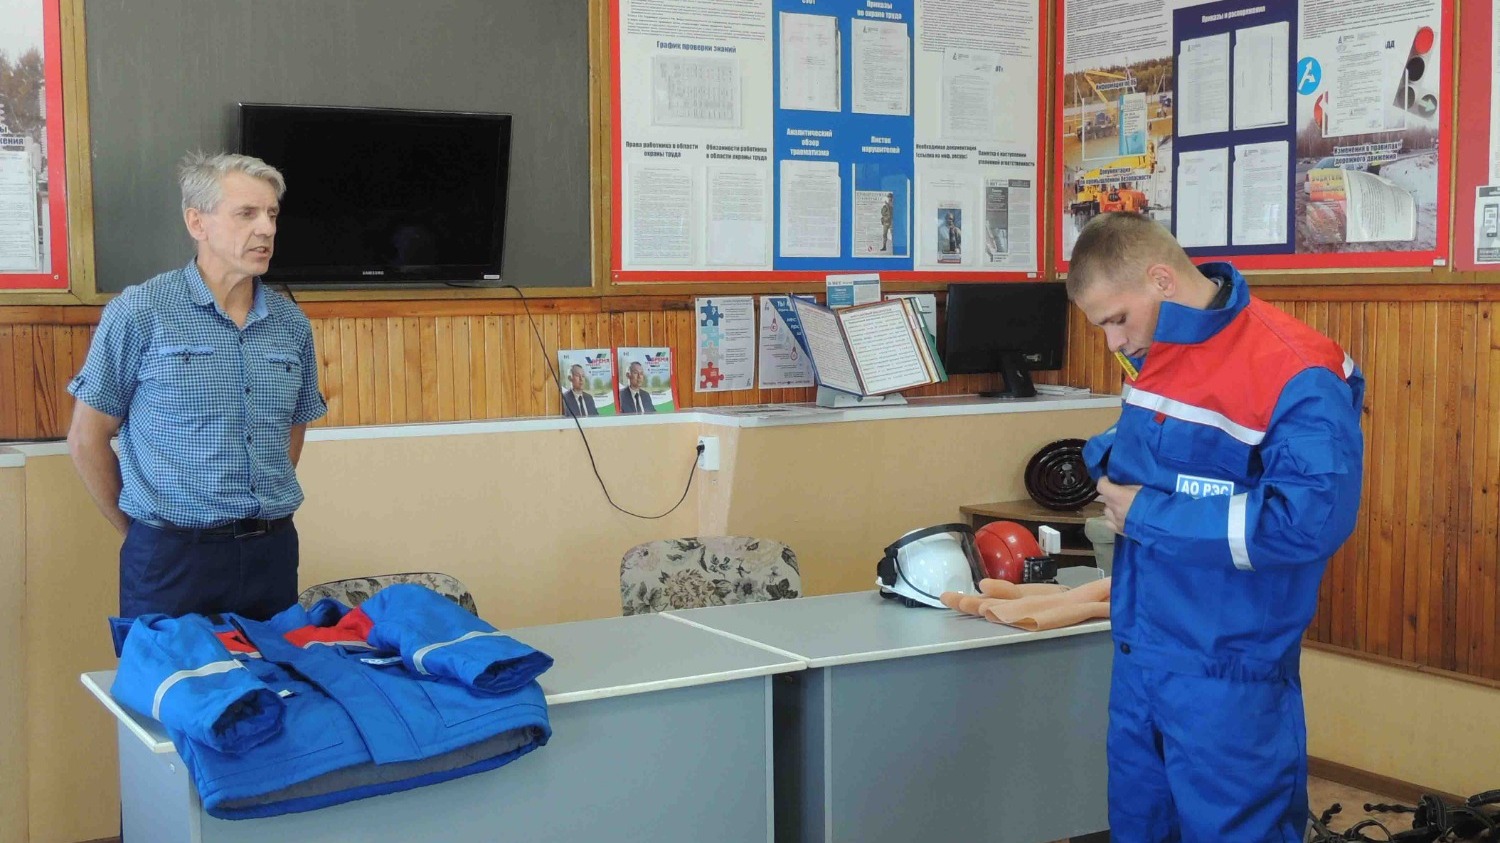 Познавательные экскурсии для детей и взрослых проводит АО "РЭС" в Новосибирске.